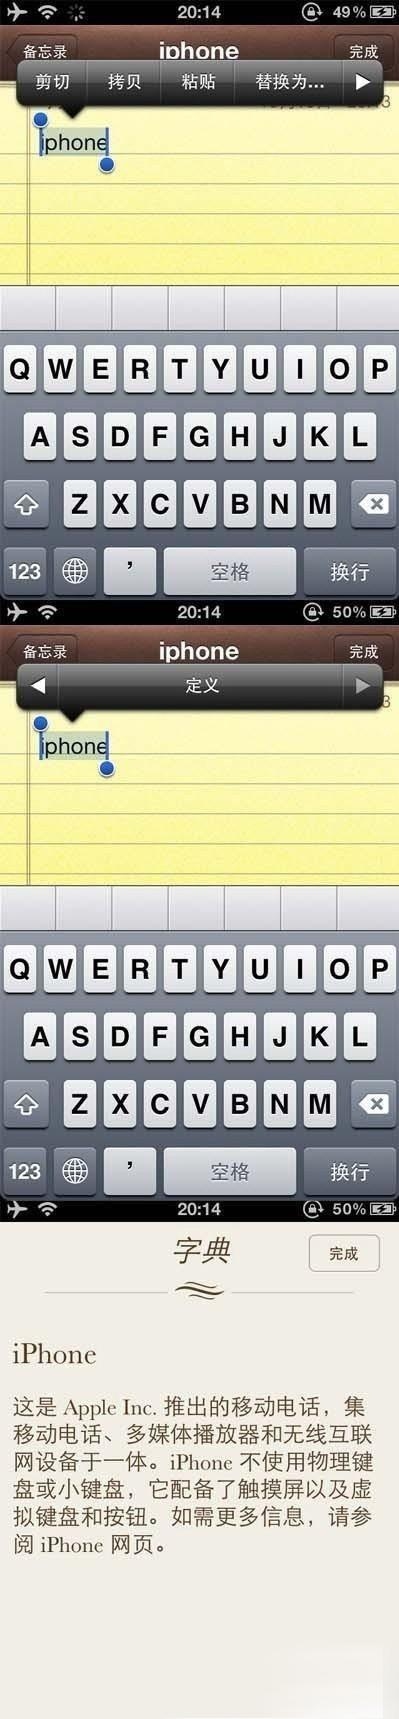 iphone4s字典功能使用教程1